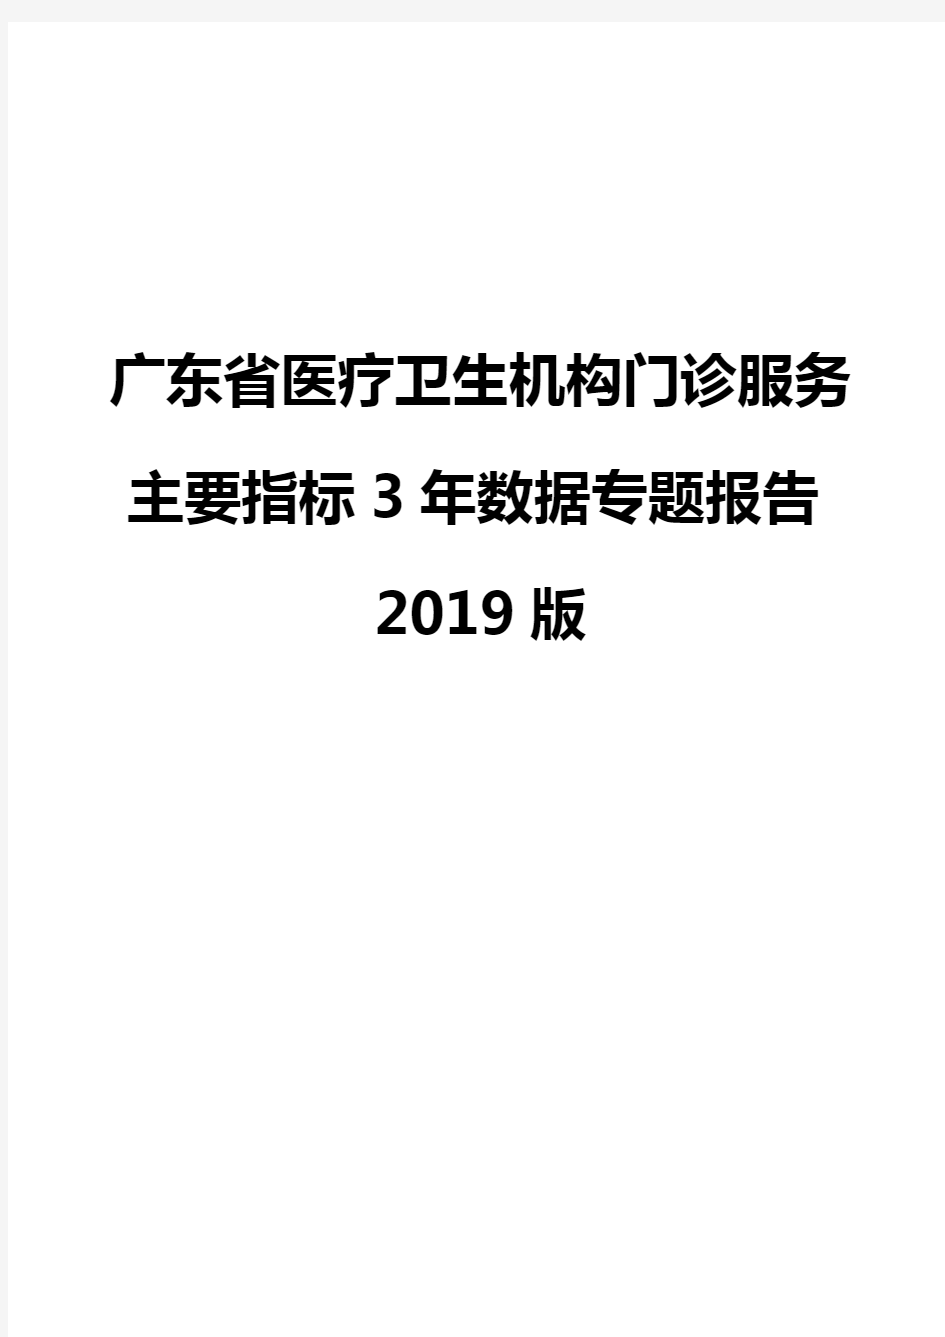 广东省医疗卫生机构门诊服务主要指标3年数据专题报告2019版